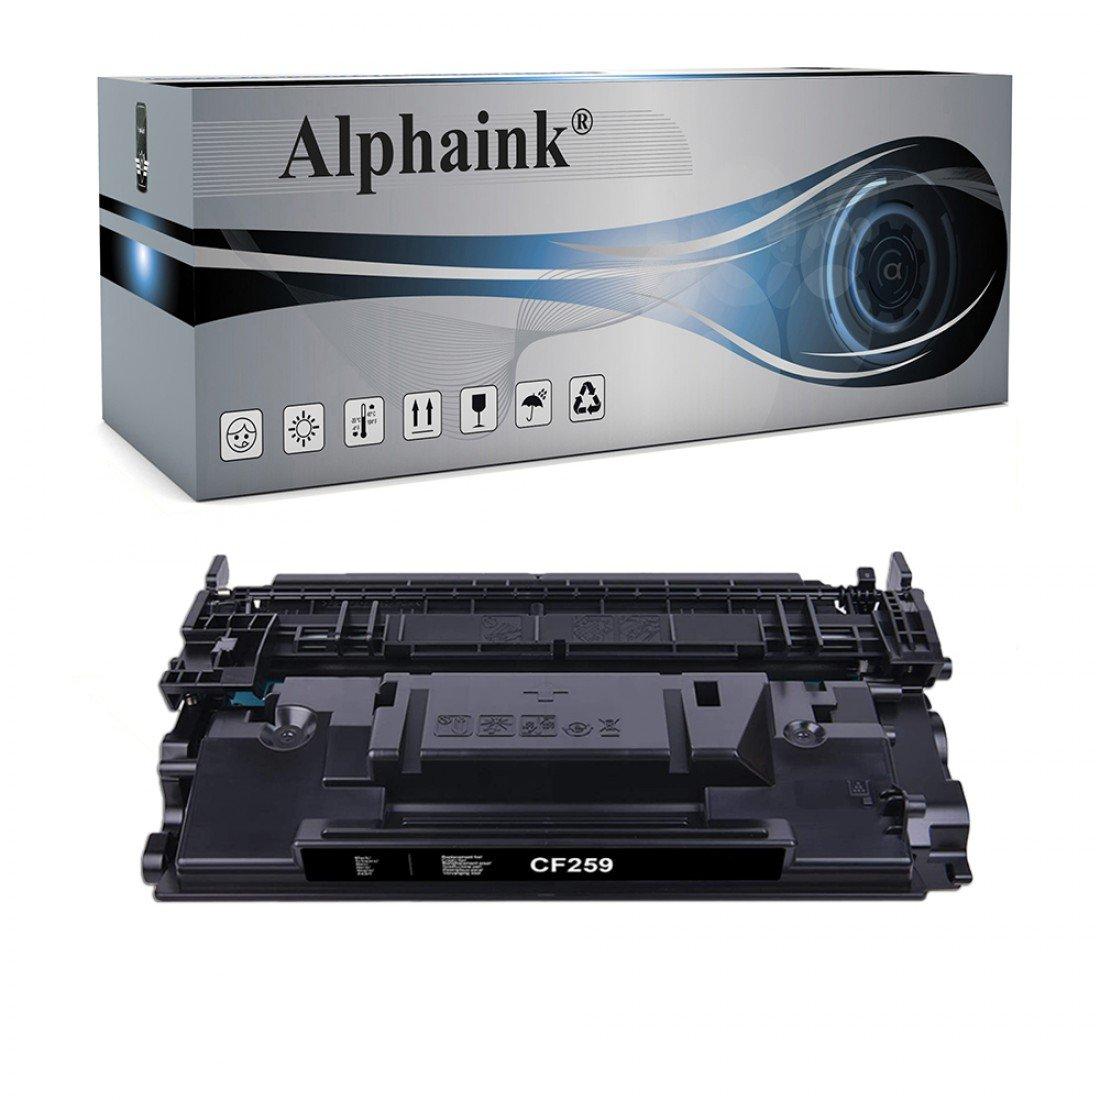 Compra Toner Hp Cf259a Nero No Chip Compatibile Alphaink 0063